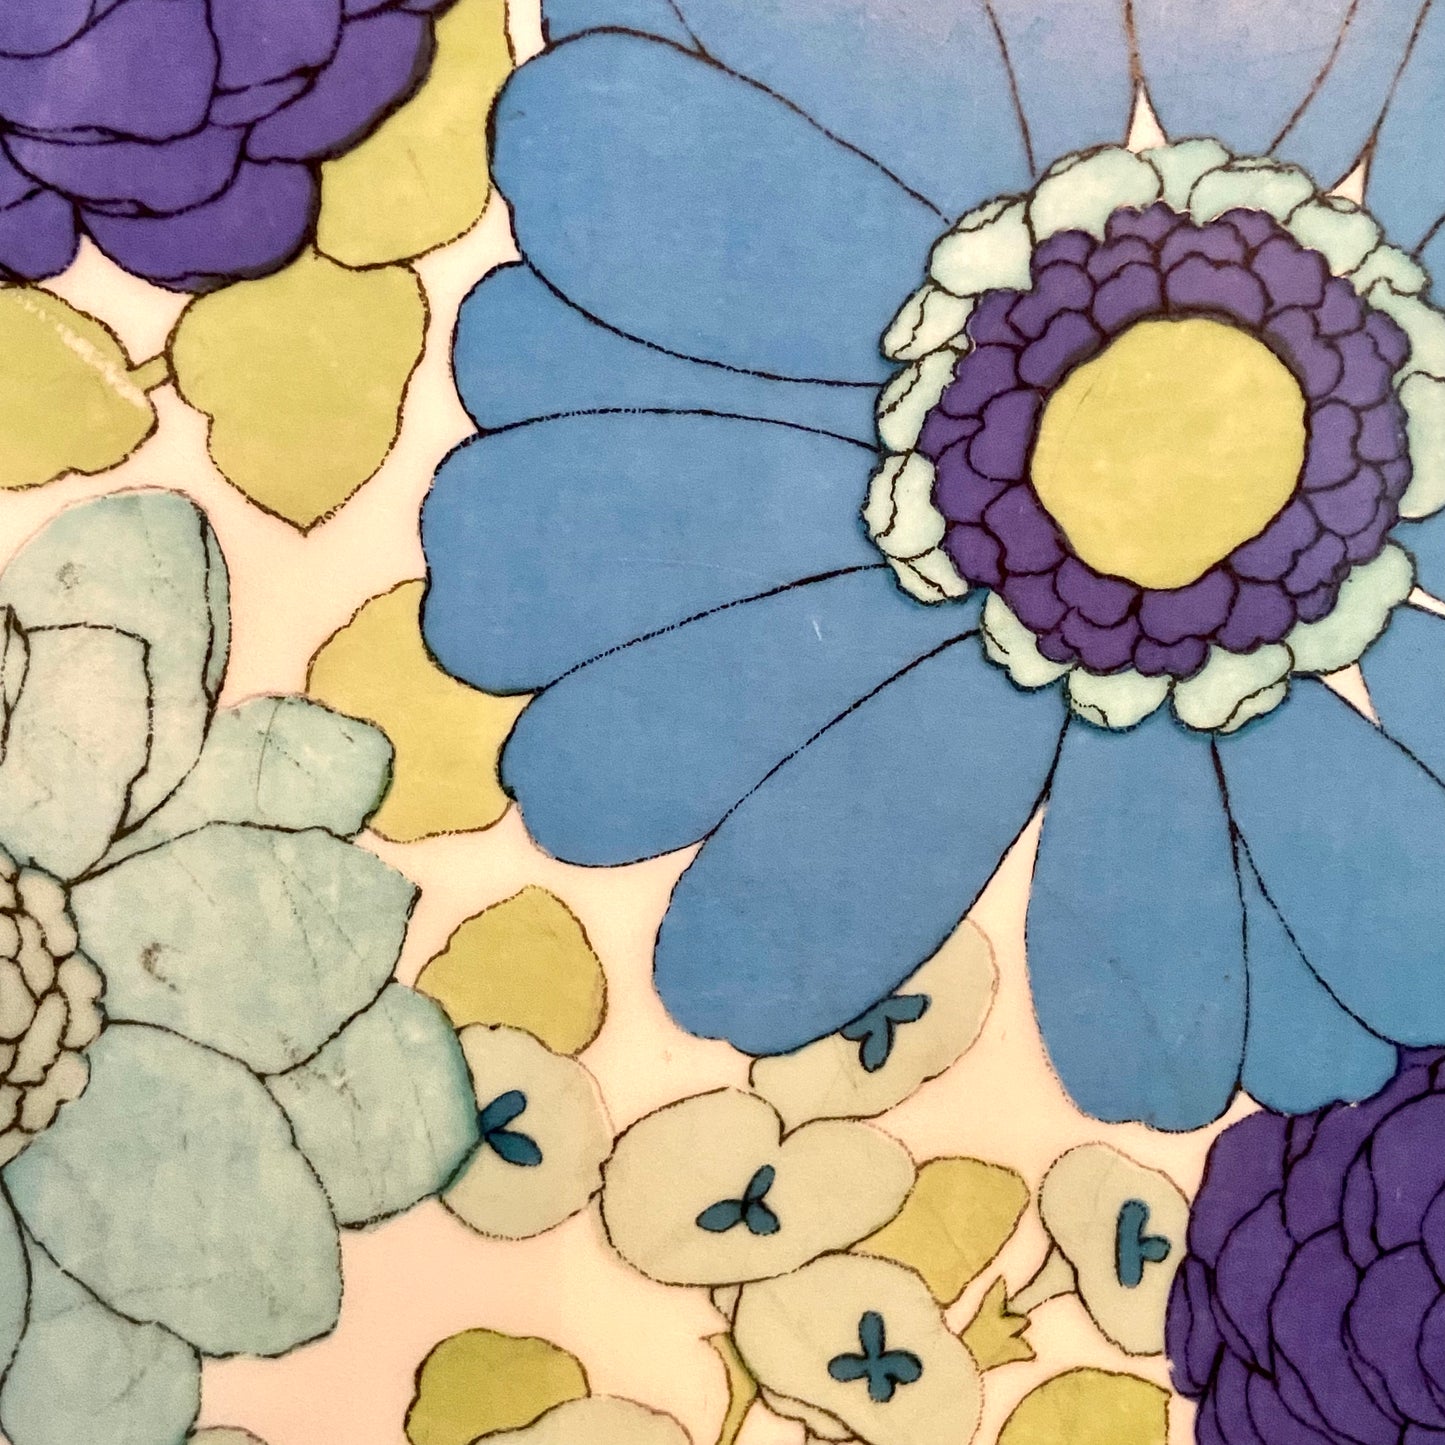 Set of 6 vintage designer blue & white floral plates by Interlaken Of France